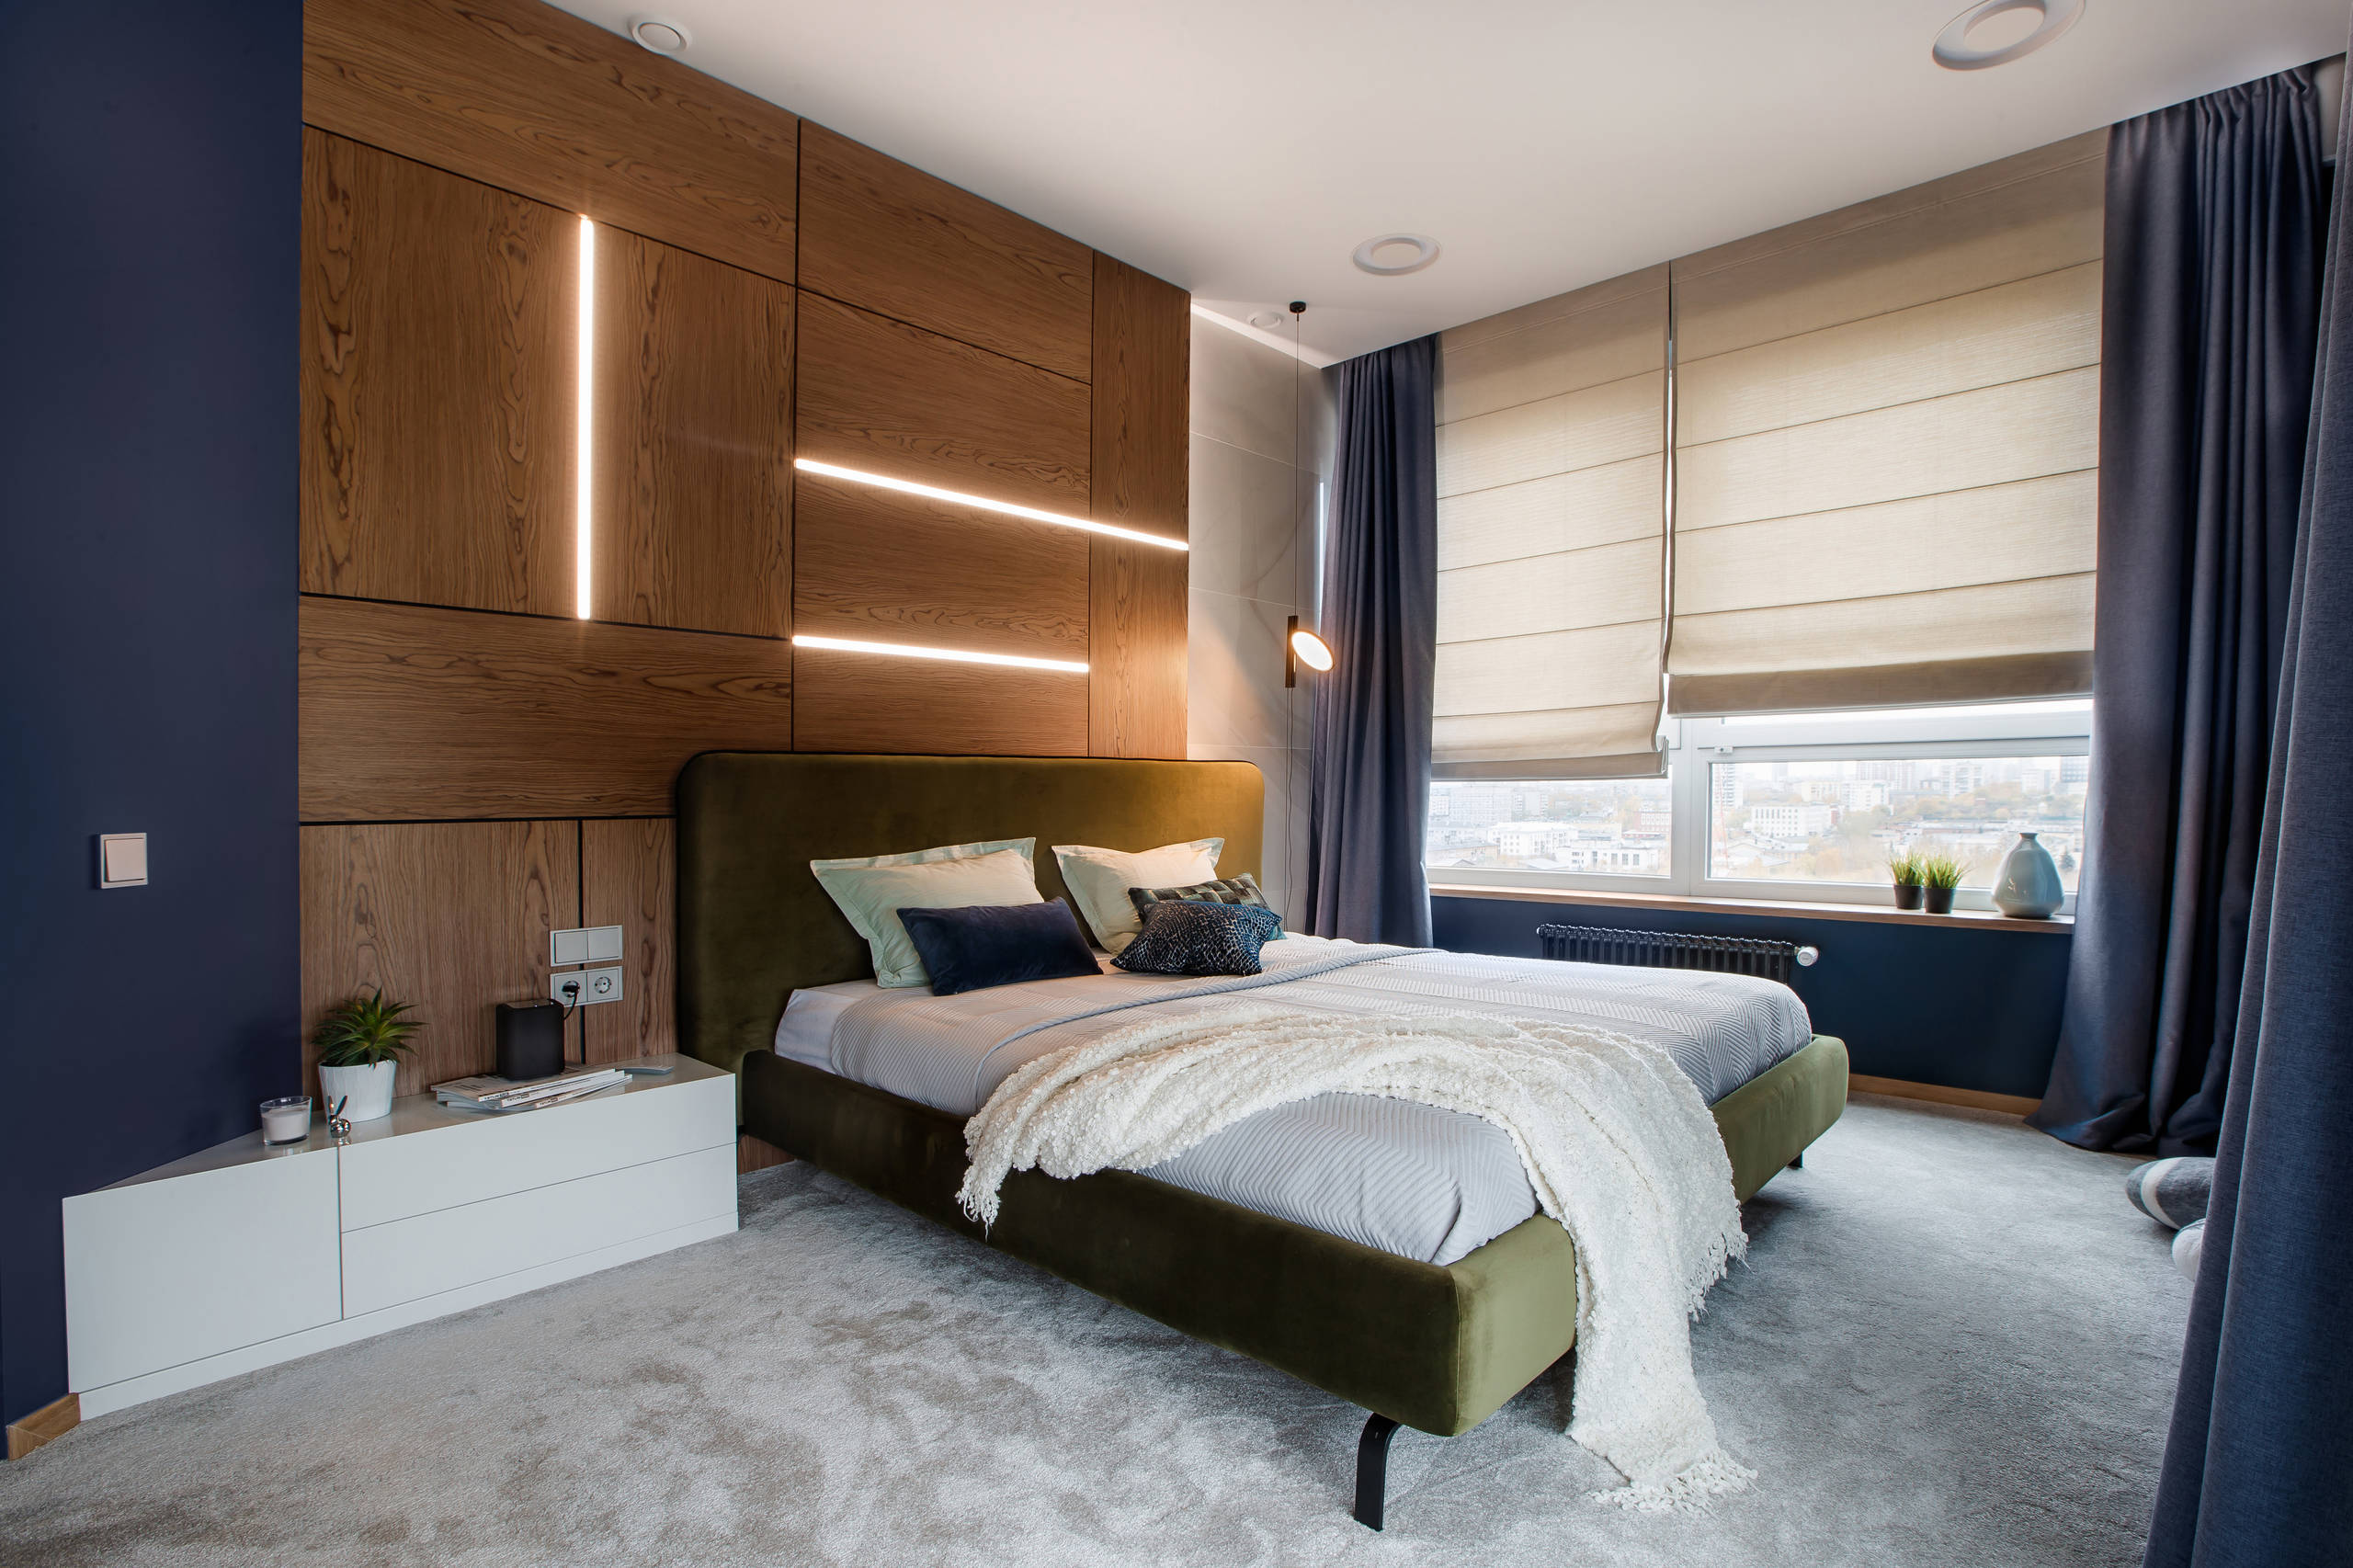 Интерьер спальни cветовыми линиями, жалюзи, рейками с подсветкой, подсветкой настенной, подсветкой светодиодной и светильниками над кроватью в современном стиле